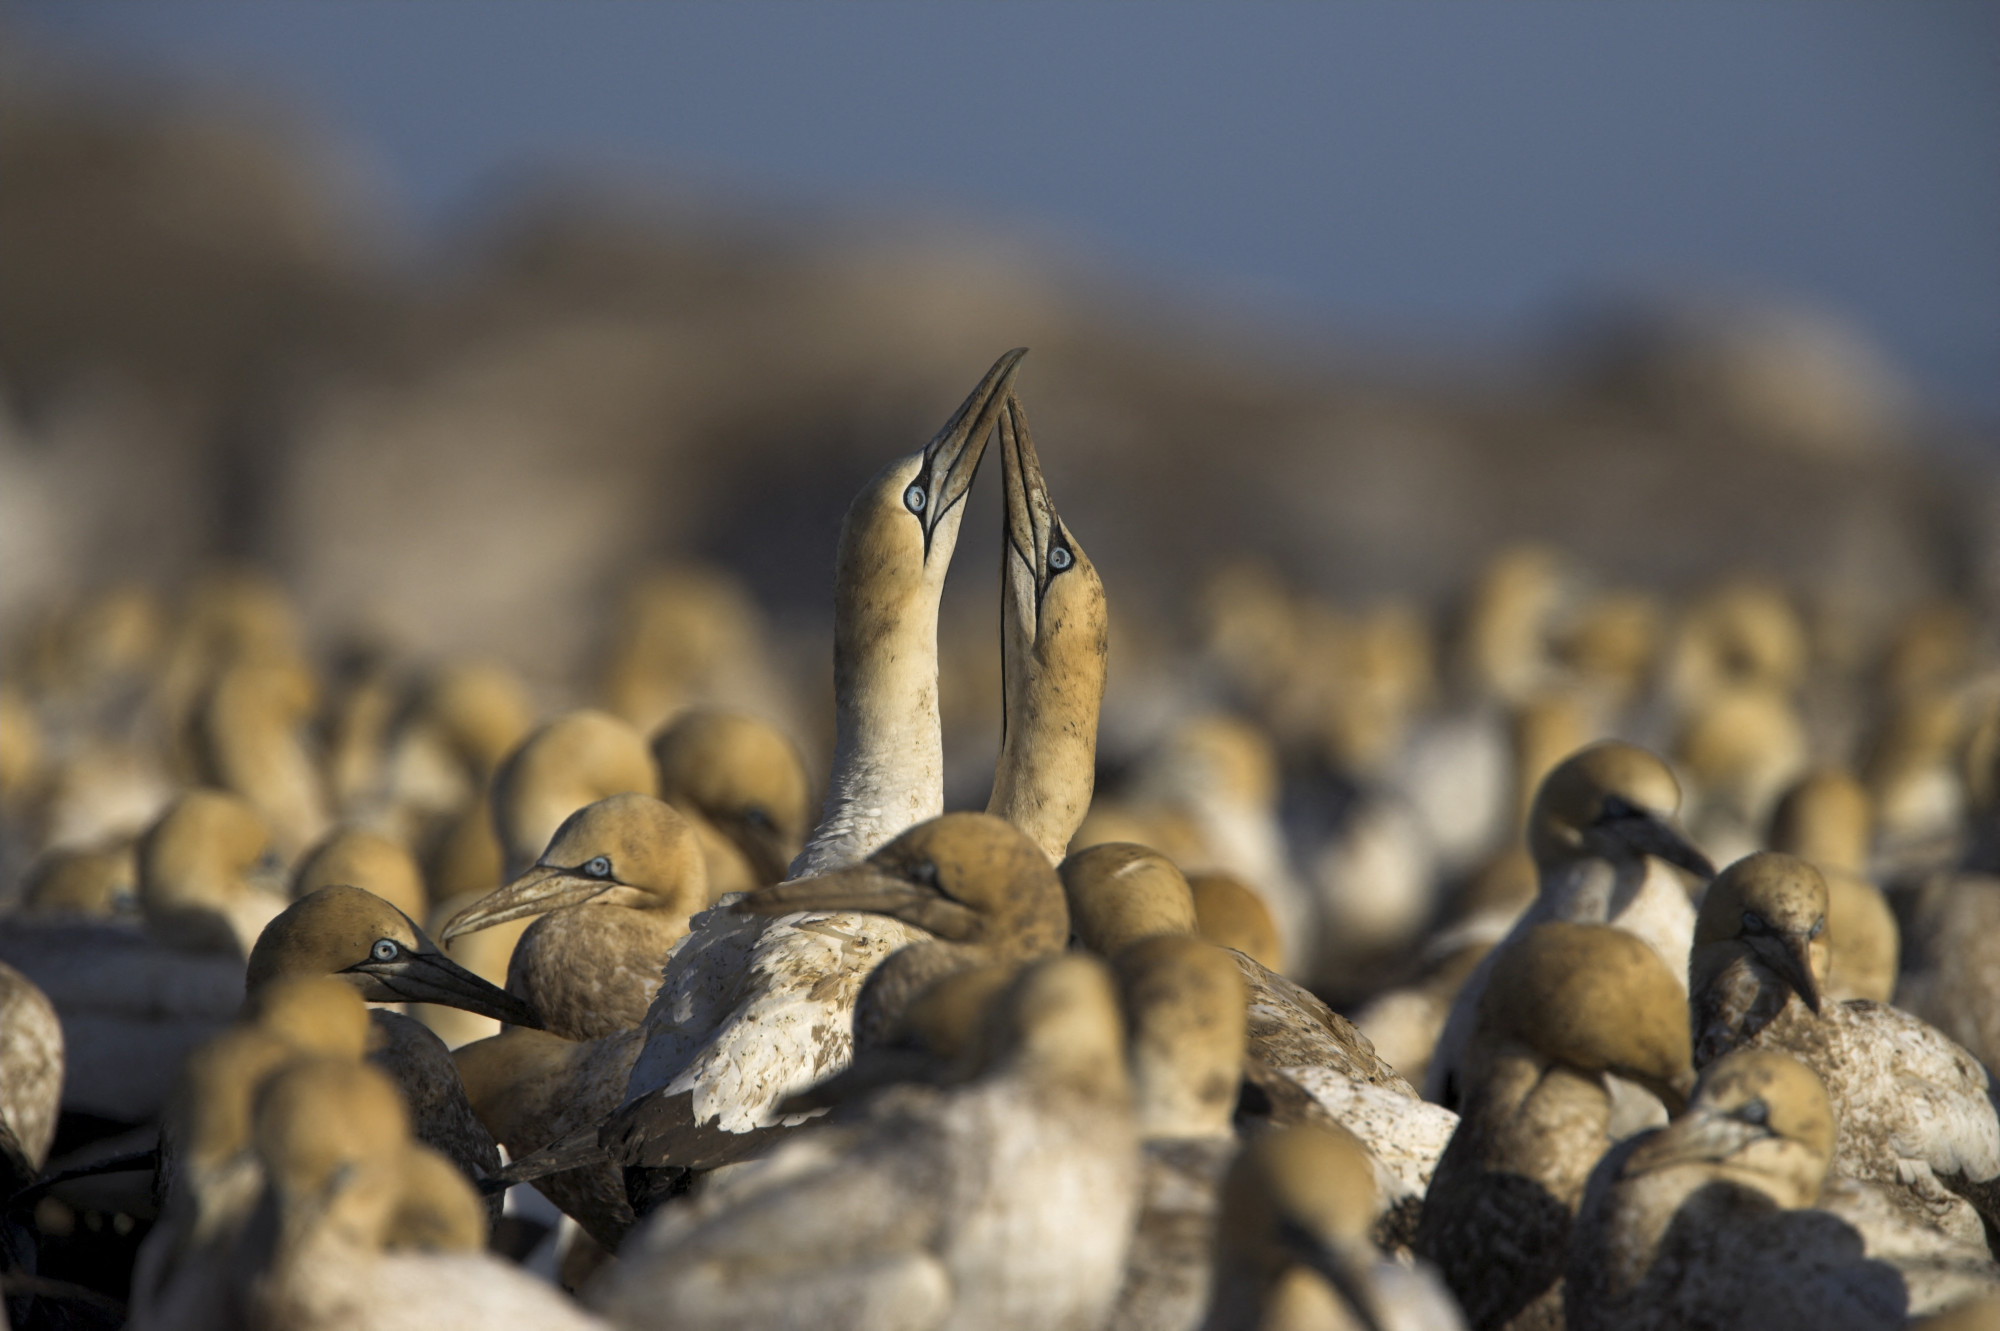 Tömegesen pusztulnak a hőség miatt a tengeri madarak, és ebből még jó nagy baj lehet